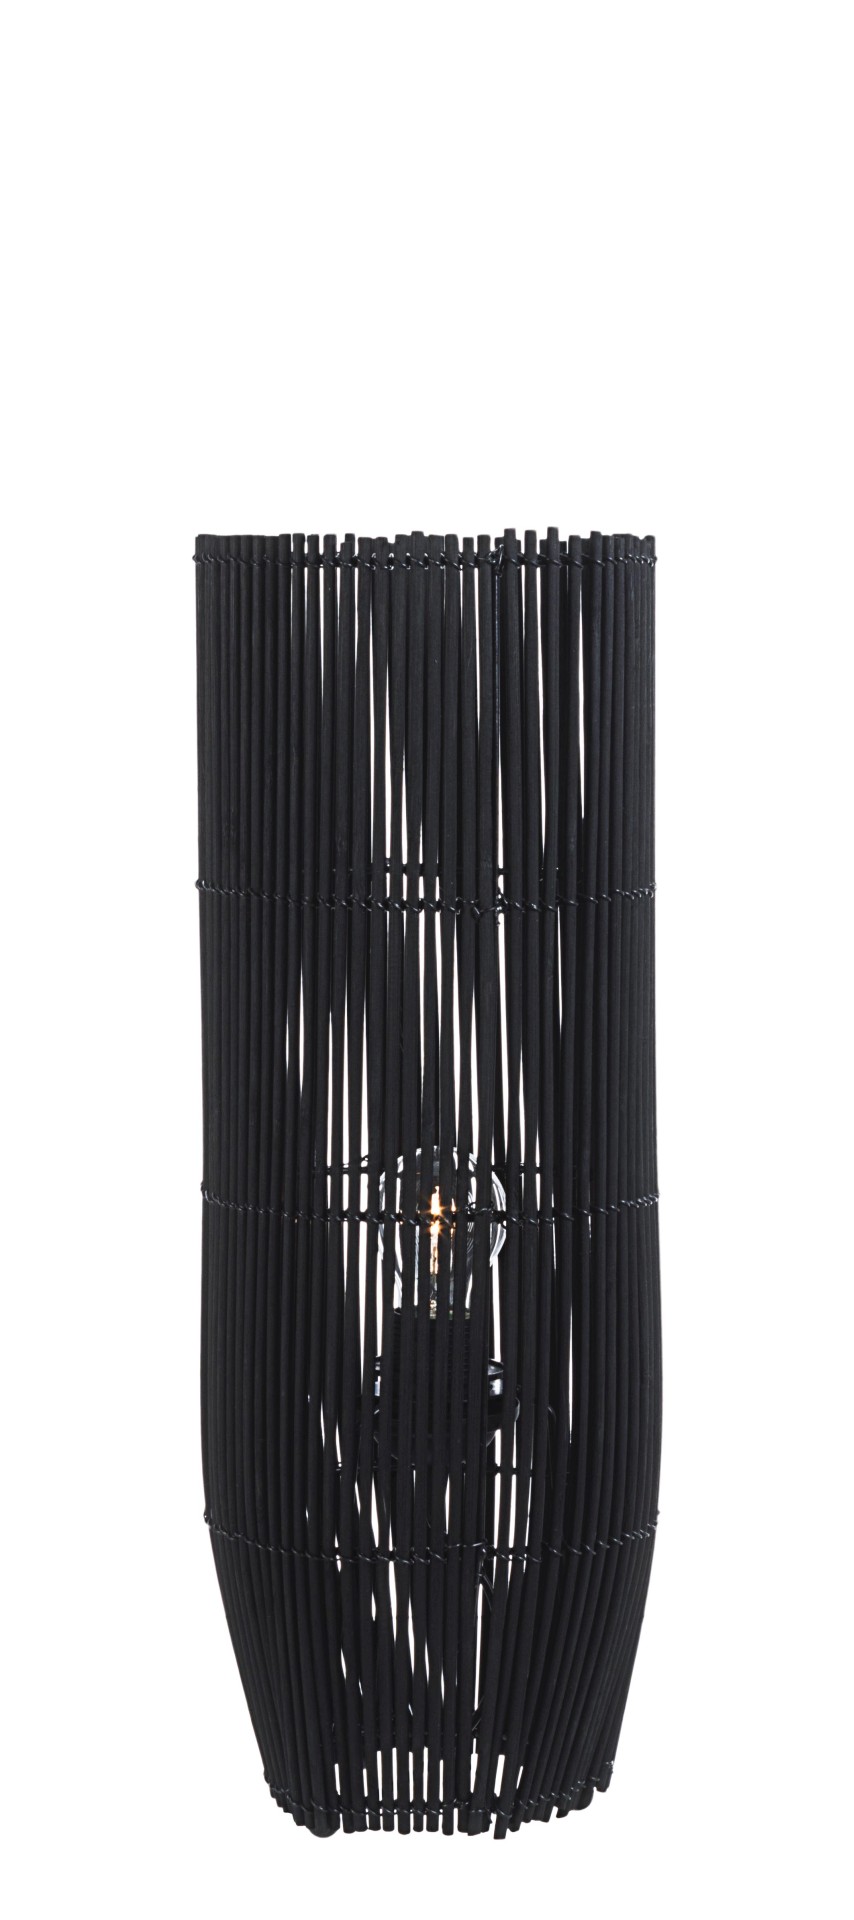 Die Tischleuchte Arusha überzeugt mit ihrem klassischen Design. Gefertigt wurde sie aus Bambus, welches einen schwarzen Farbton besitzt. Die Lampe besitzt eine Höhe von 52 cm.